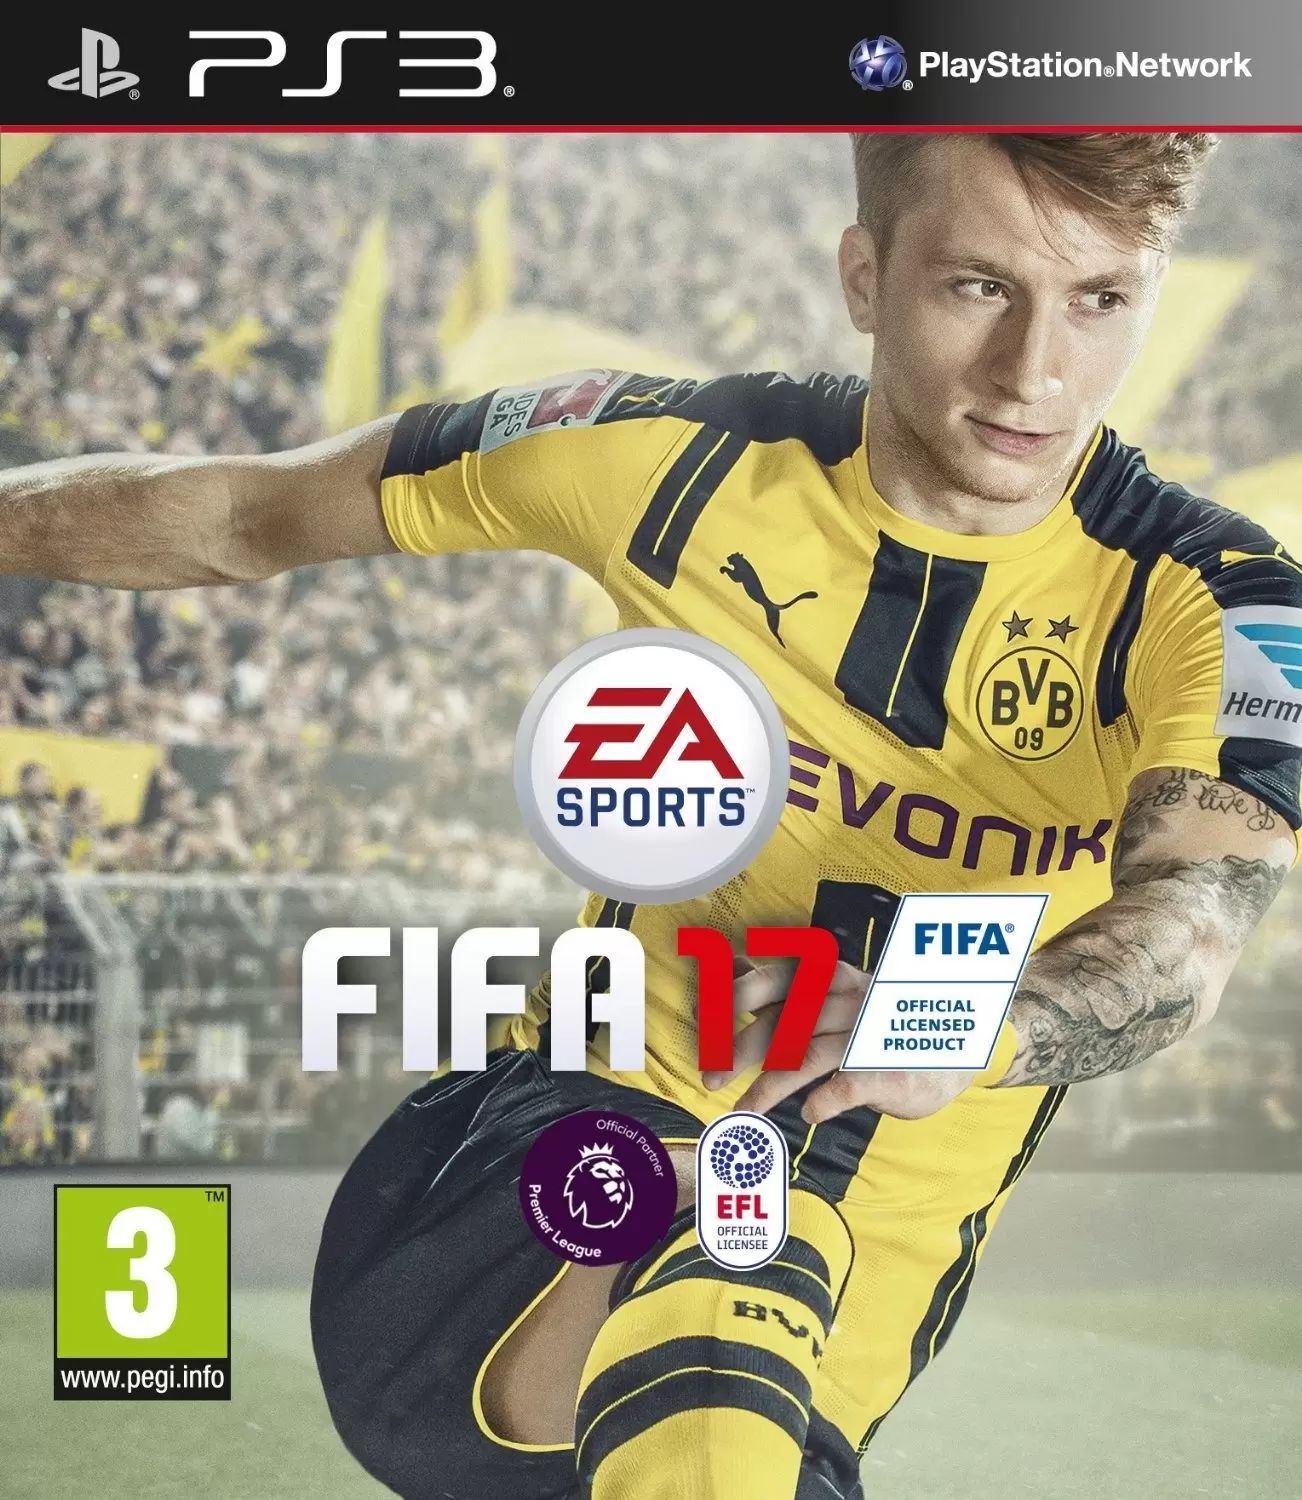 PS3 Games - FIFA 17